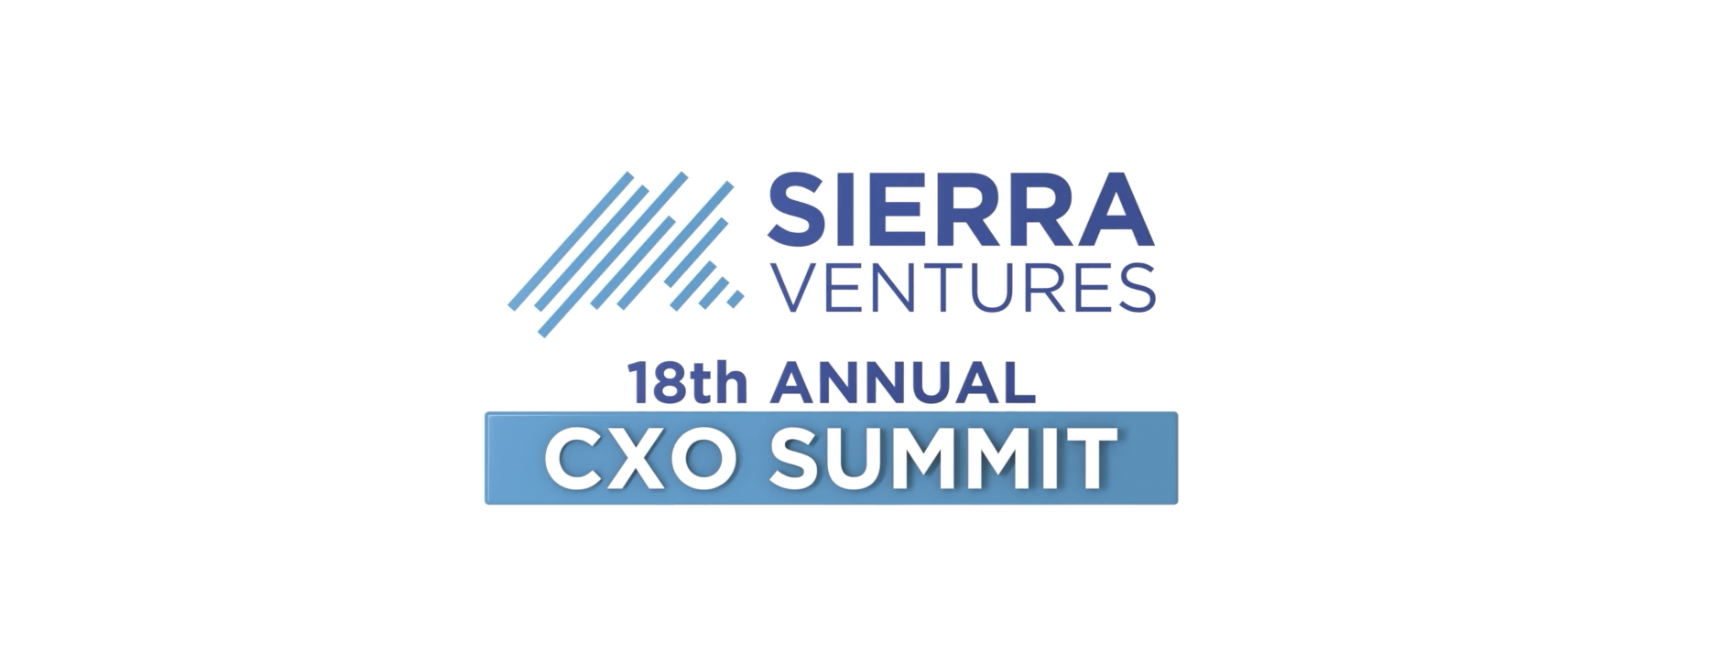 Sierra Ventures' 18th Annual CXO Summit